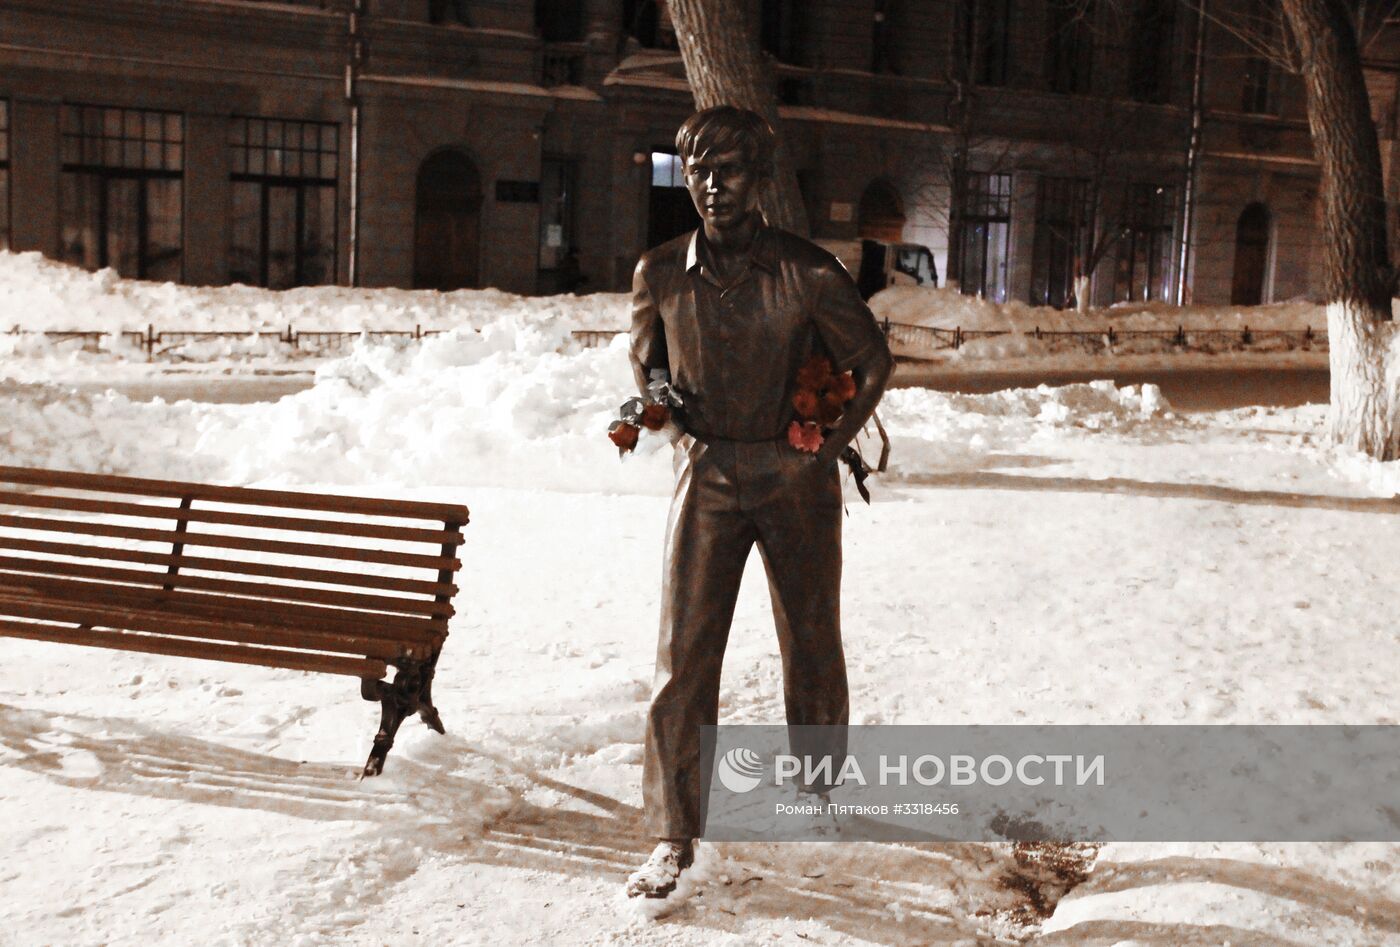 Жители Саратова несут цветы к памятнику актеру Олегу Табакову